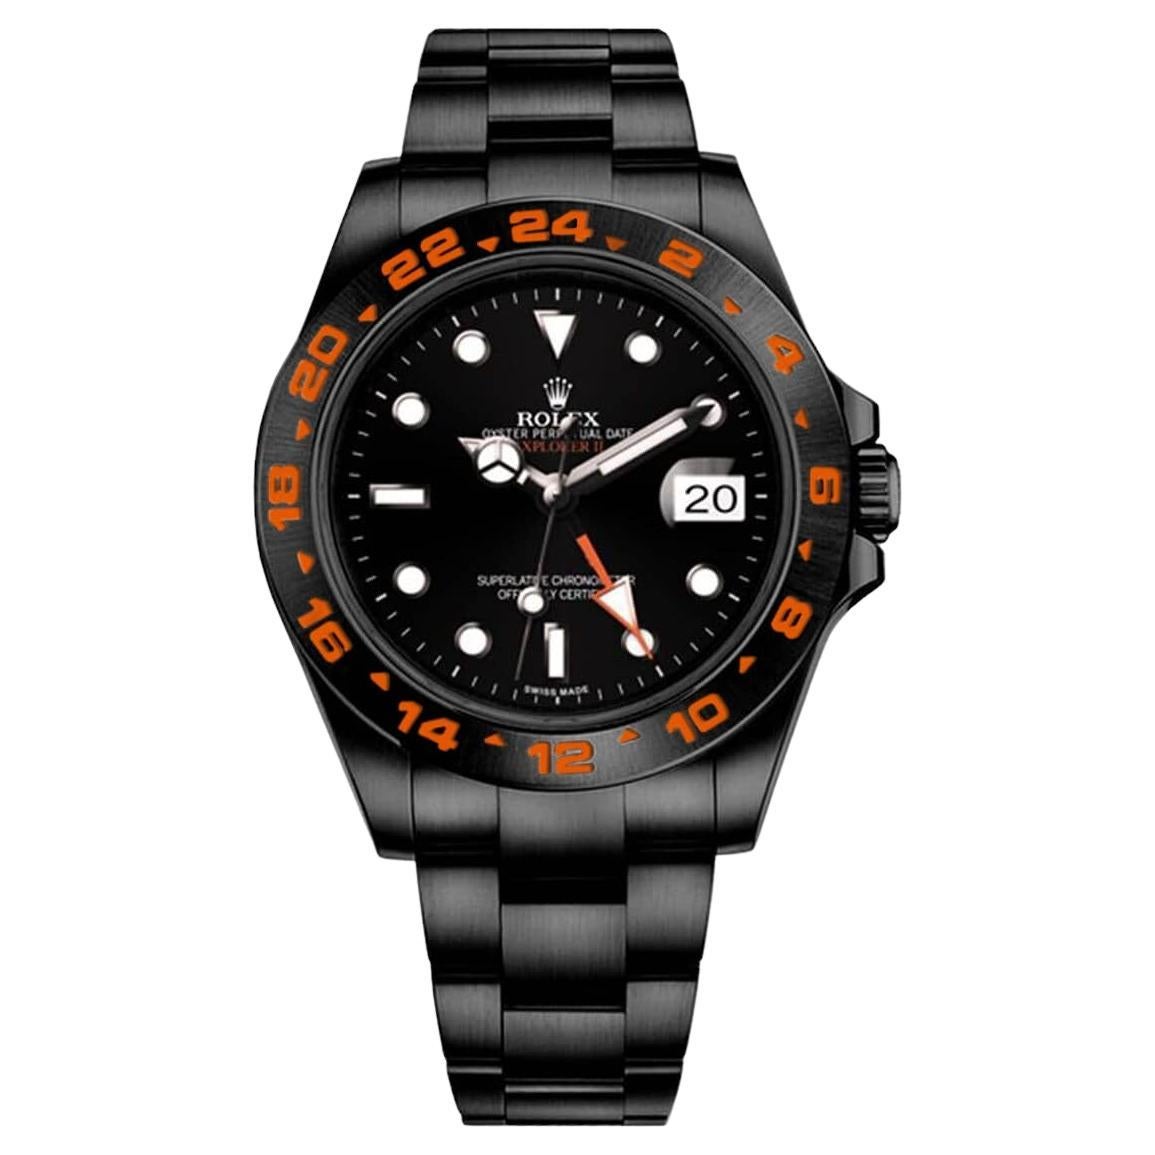 Reloj Rolex Explorer II de acero inoxidable con revestimiento PVD/DLC negro